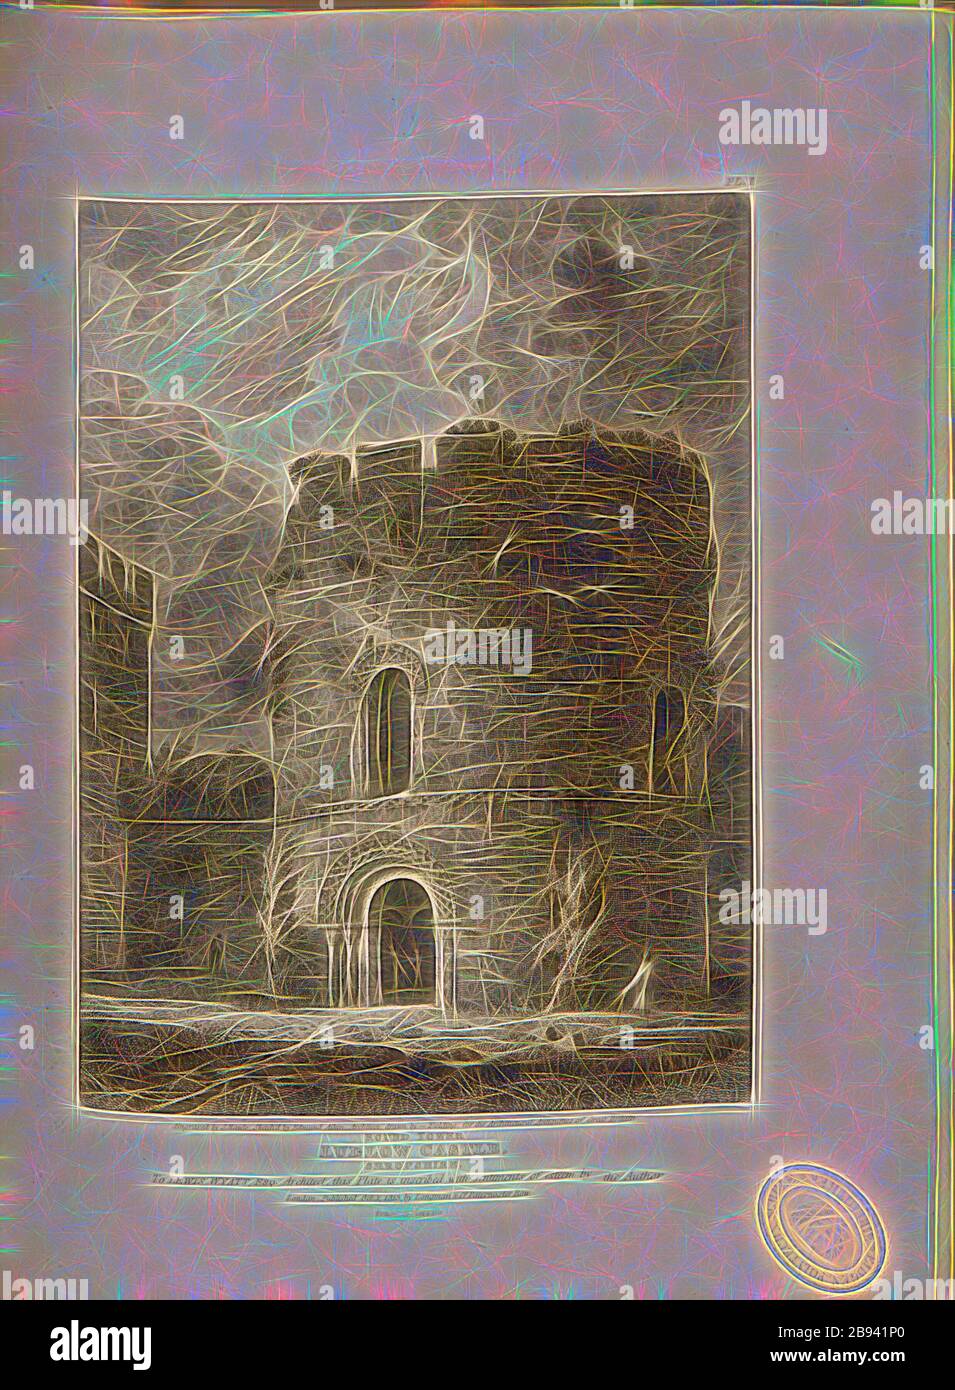 Torre rotonda Ludlow Castle, Shropshire, Cappella di Santa Maria Maddalena del castello di Ludlow nello Shropshire, firmata: Inciso da S. Rawle, disegnato da Edmund Aikin, pubblicato da Longman & Co, Fig. 42, Pl. I, dopo p. 129, Aikin, Edmund (schizzo), Rawle, Samuel (incisione), Longman & Co. (Pubblicato), 1813, John Britton: Le antichità architettoniche della Gran Bretagna: Rappresentate ed illustrate in una serie di viste, elevazioni, piani, sezioni e dettagli di vari antichi edifici inglesi: Con testimonianze storiche e descrittive di ciascuno. Bd 4. Londra: J. Taylor, 1807-1826, Reimaged by Gibon, design Foto Stock